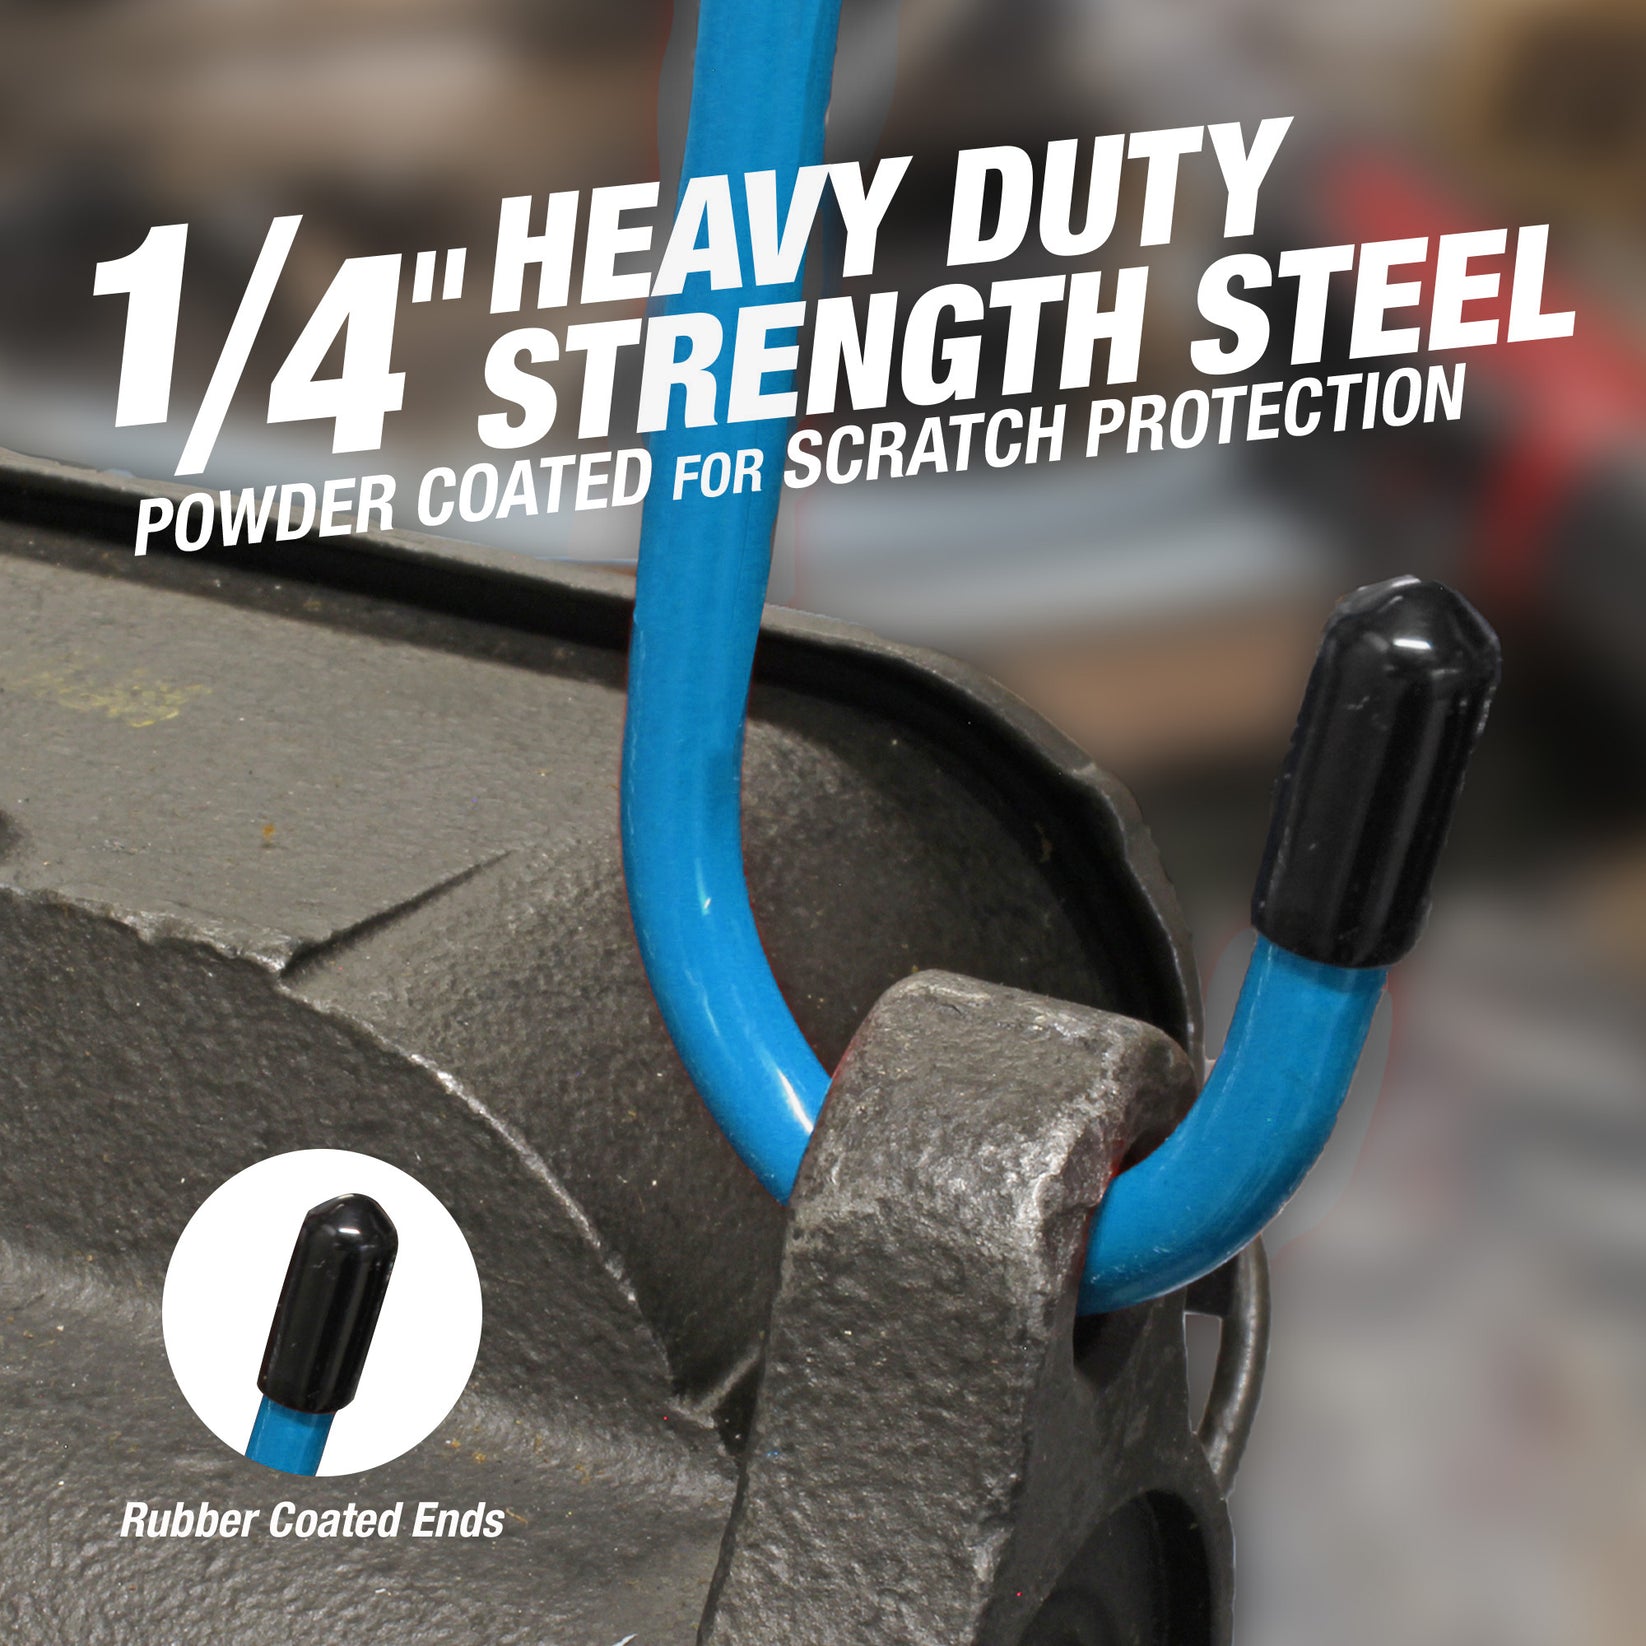 Heavy duty strength steel